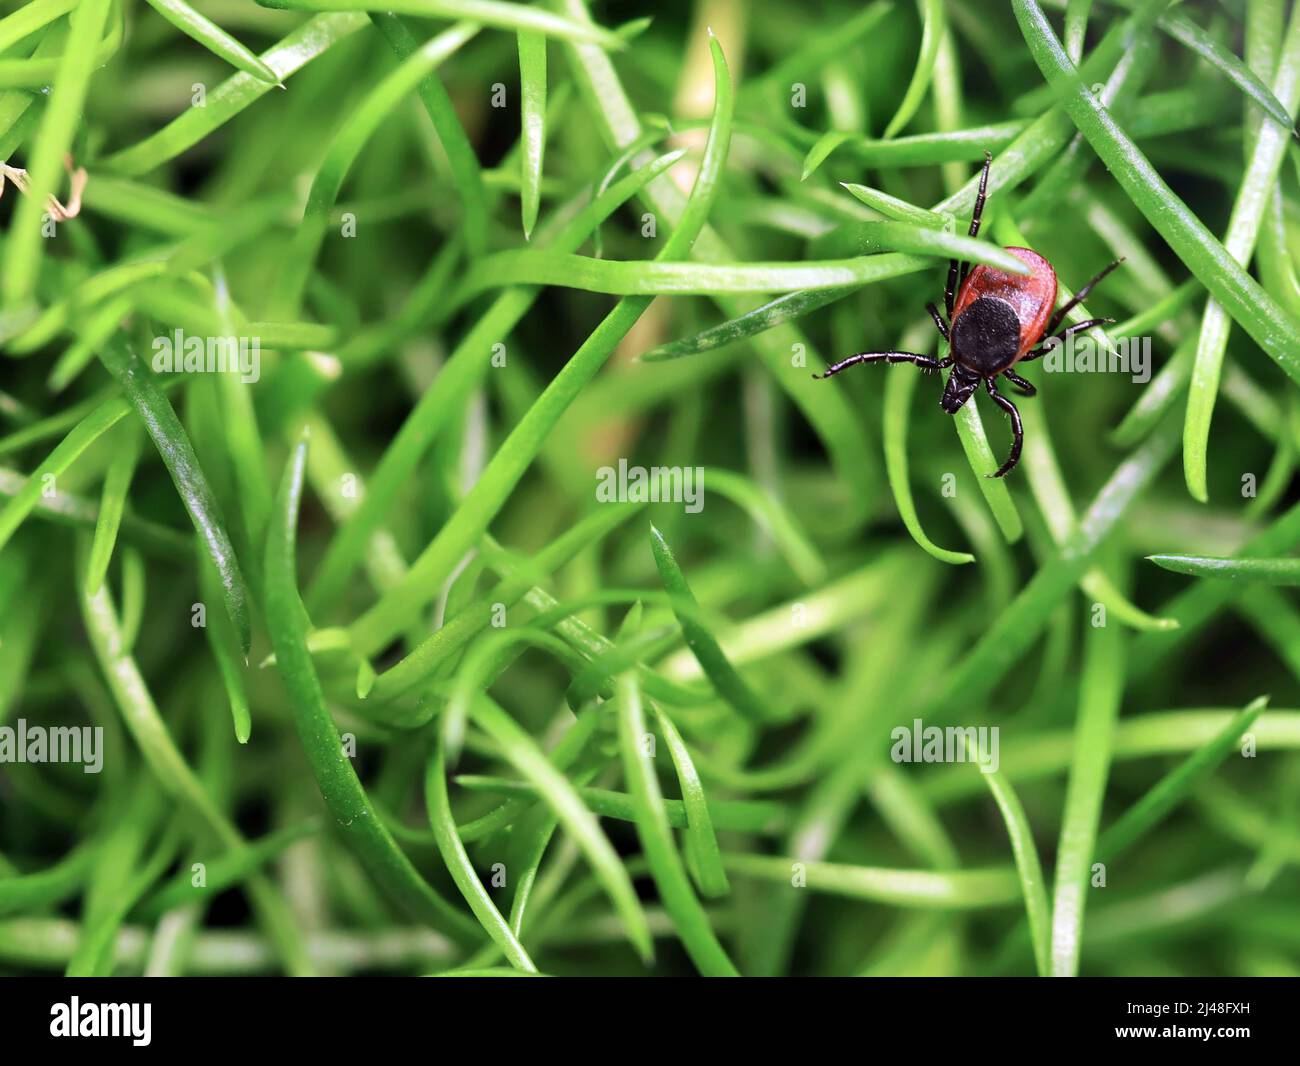 Hirschzecke oder Ixodes scapularis kriechen auf grünem Gras, Draufsicht, Stockfoto